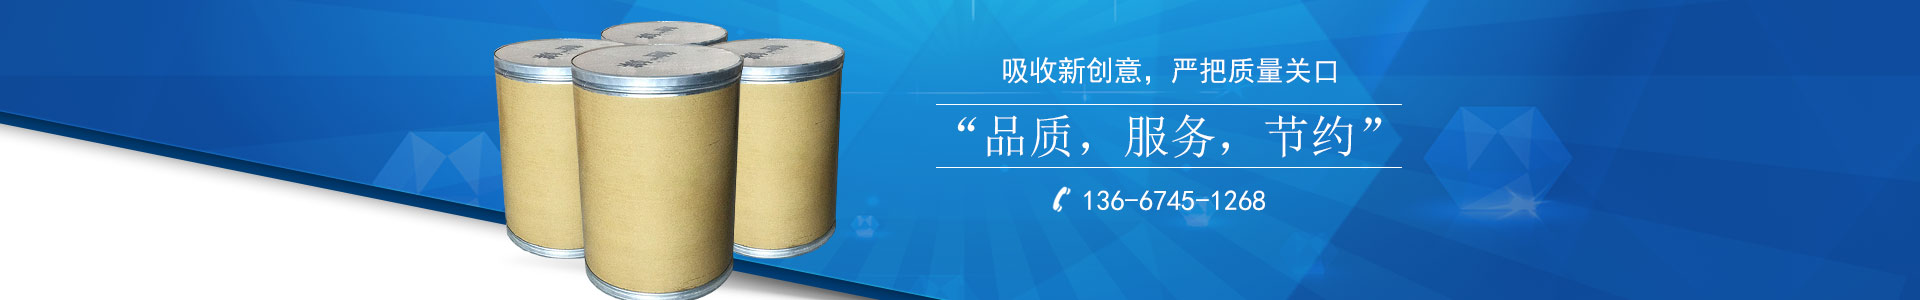 衡阳县俊兴金属包装有限责任公司_俊兴金属包装|衡阳纸桶制品设计加工|衡阳钢桶生产